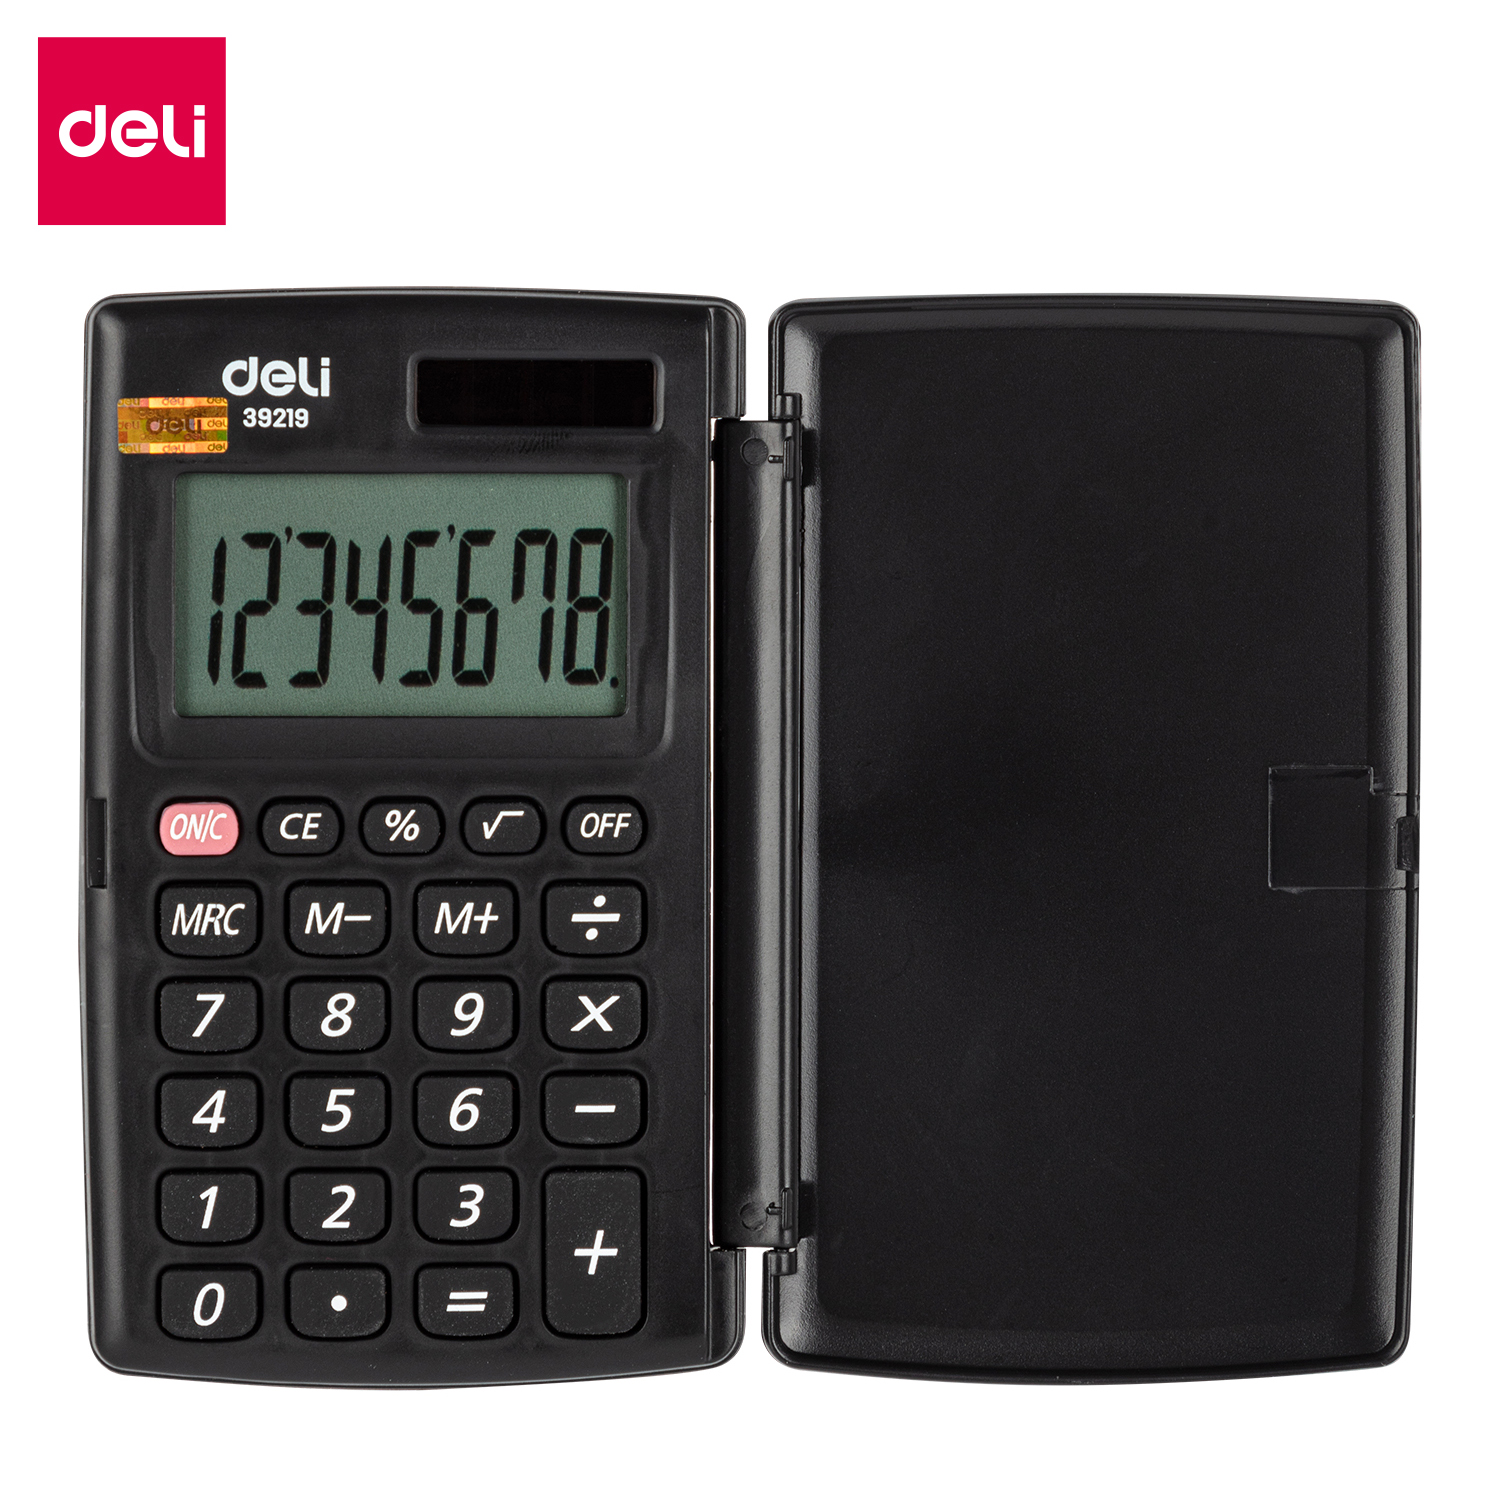 Deli-E39219 Portable Calculator